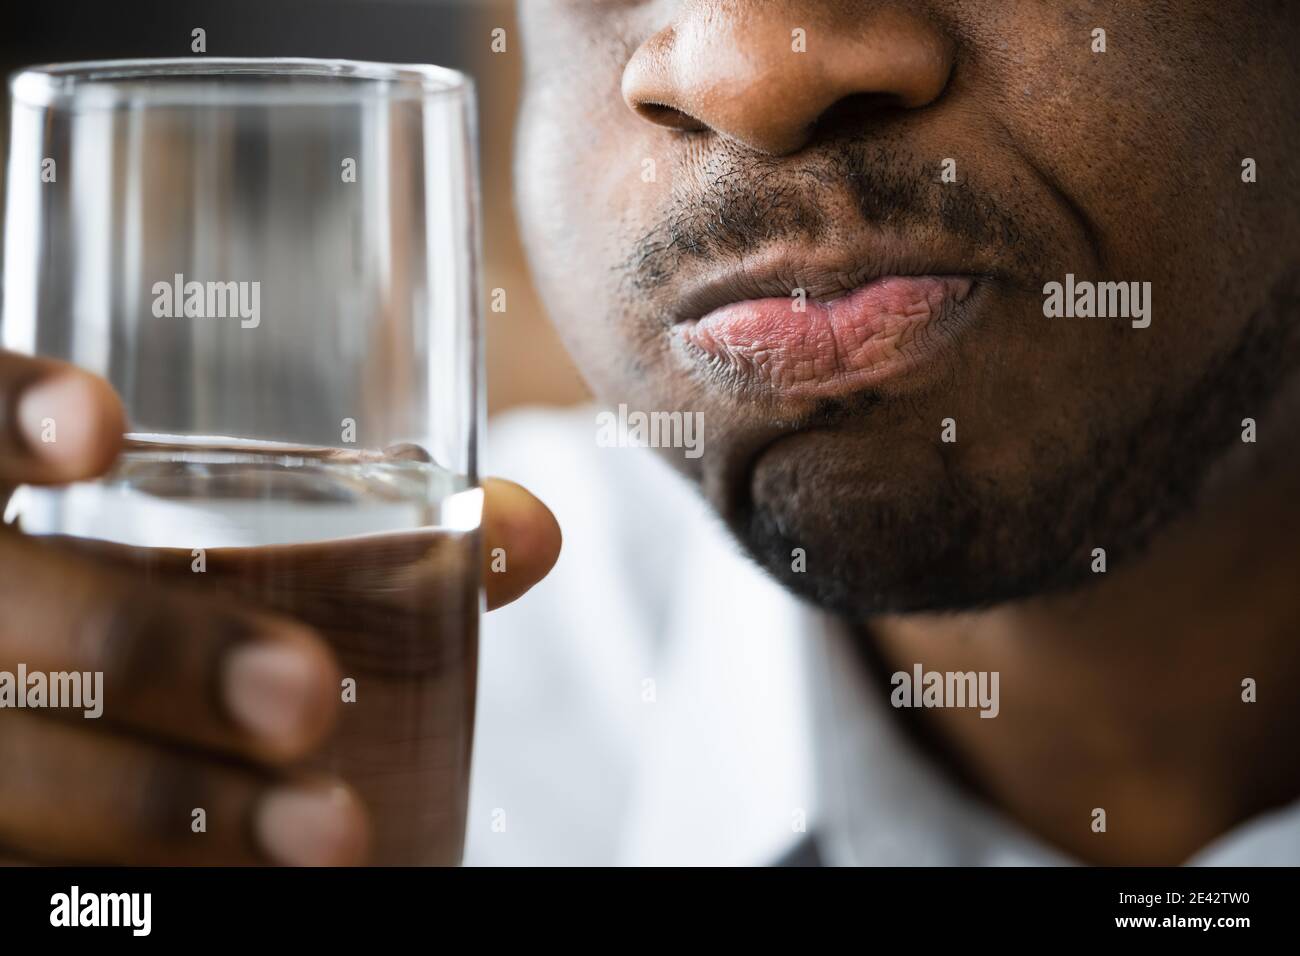 Wasser Mund Gurgeln Und Spülen. Afroamerikanischer Mann Mit Mundgeruch Stockfoto